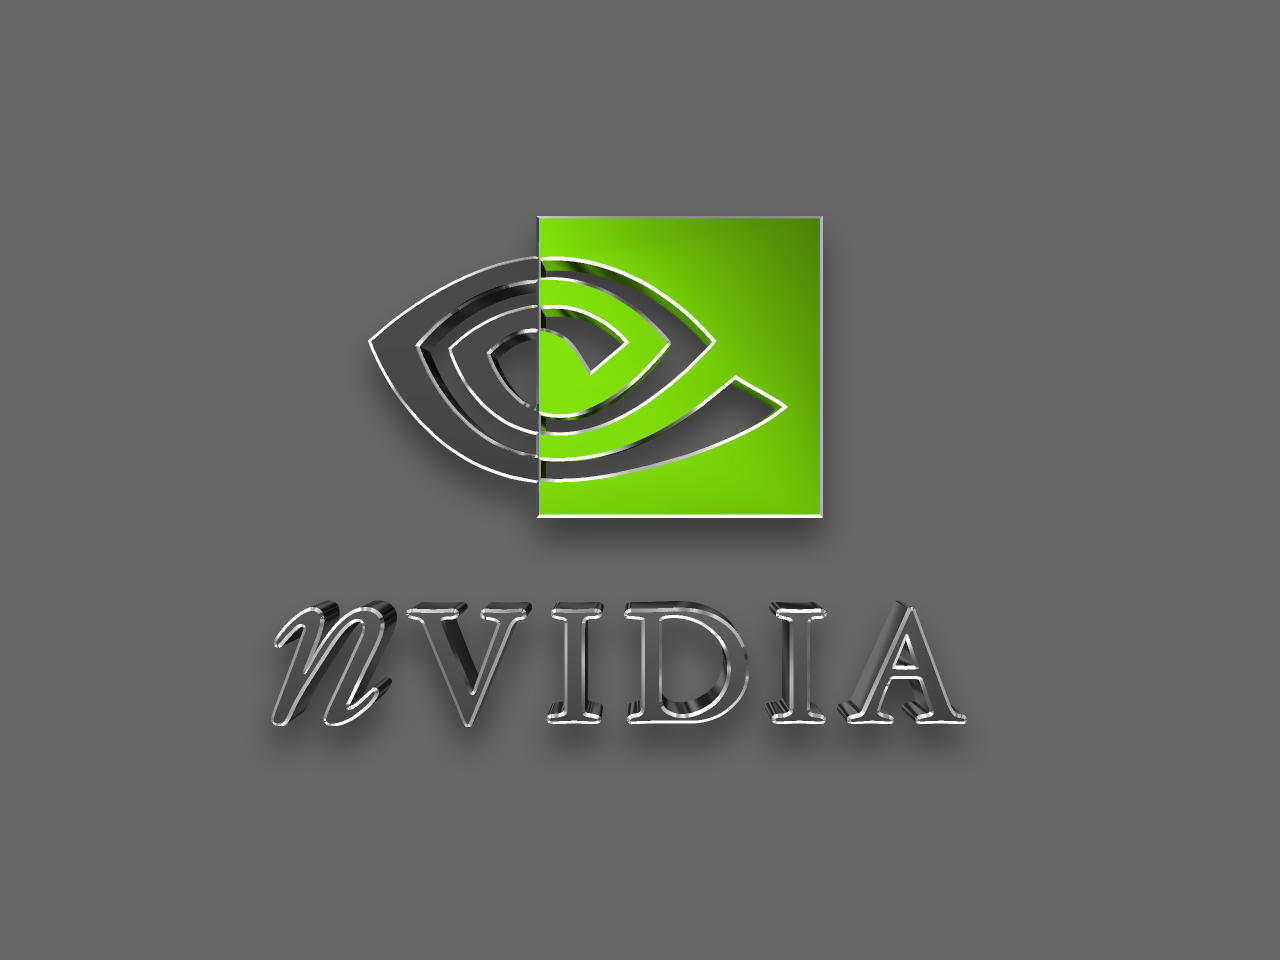 Nvidia_by_mullet.jpg